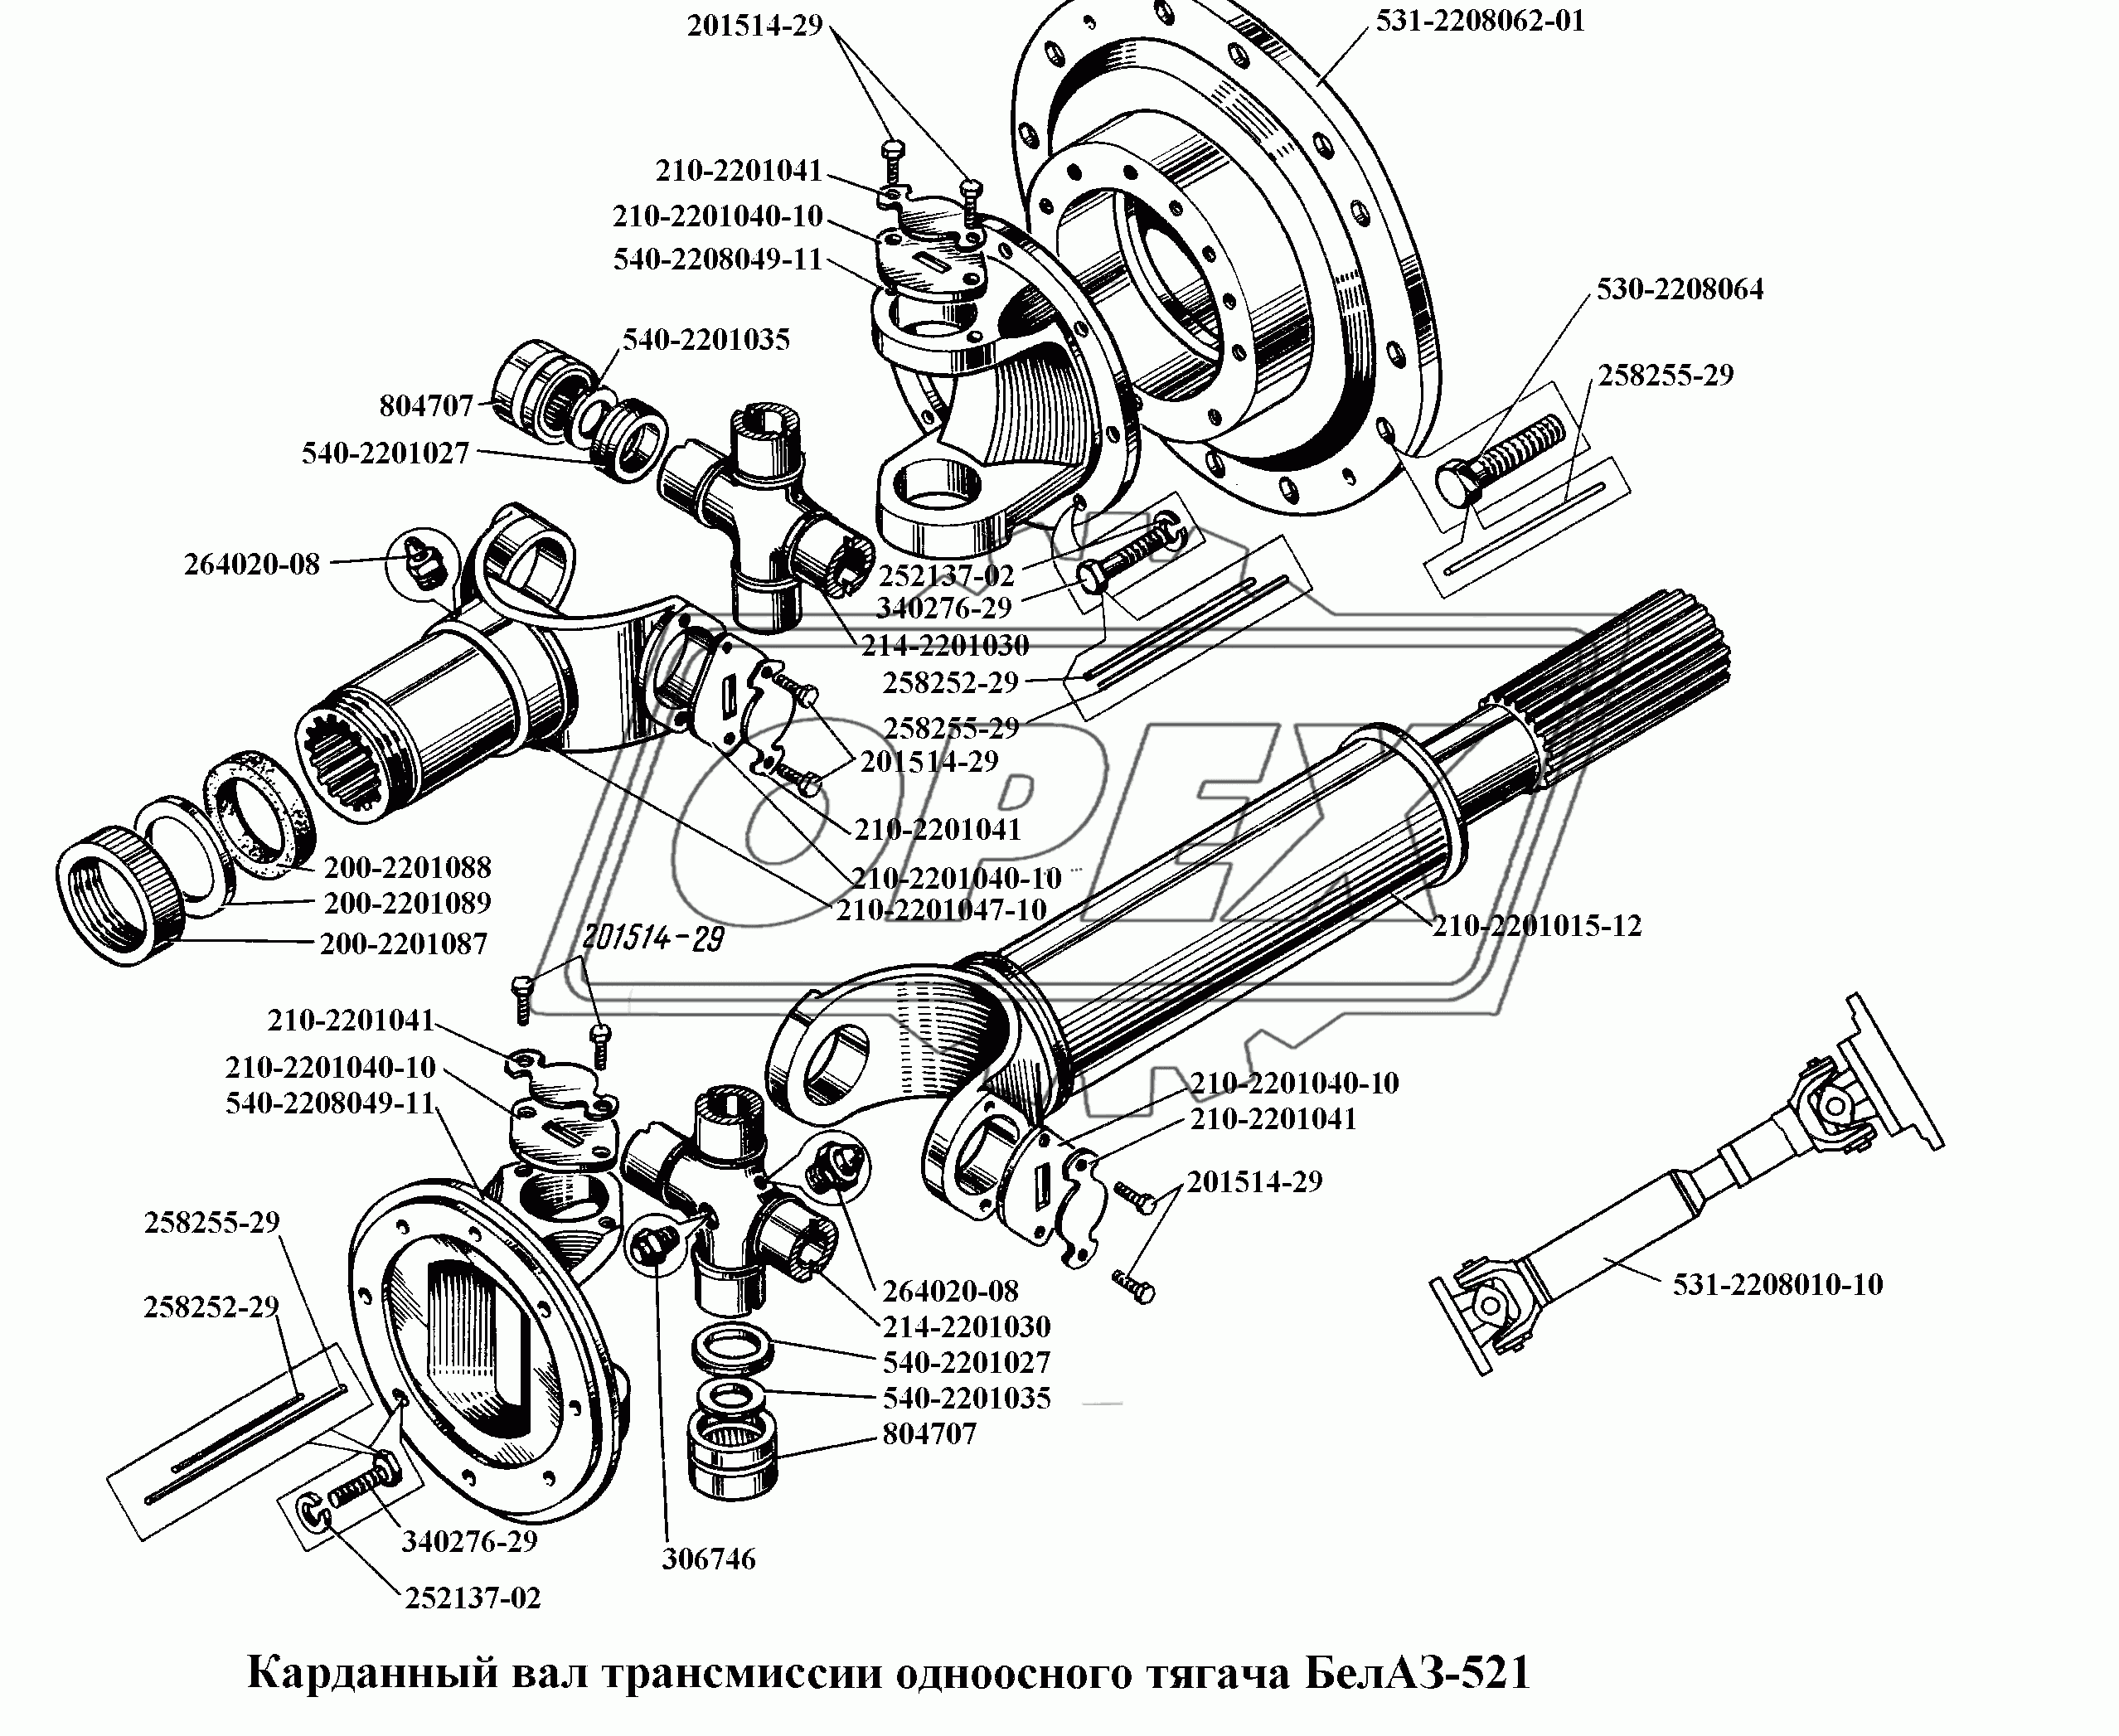 Карданный вал трансмиссии одноосного тягача БелАЗ-531